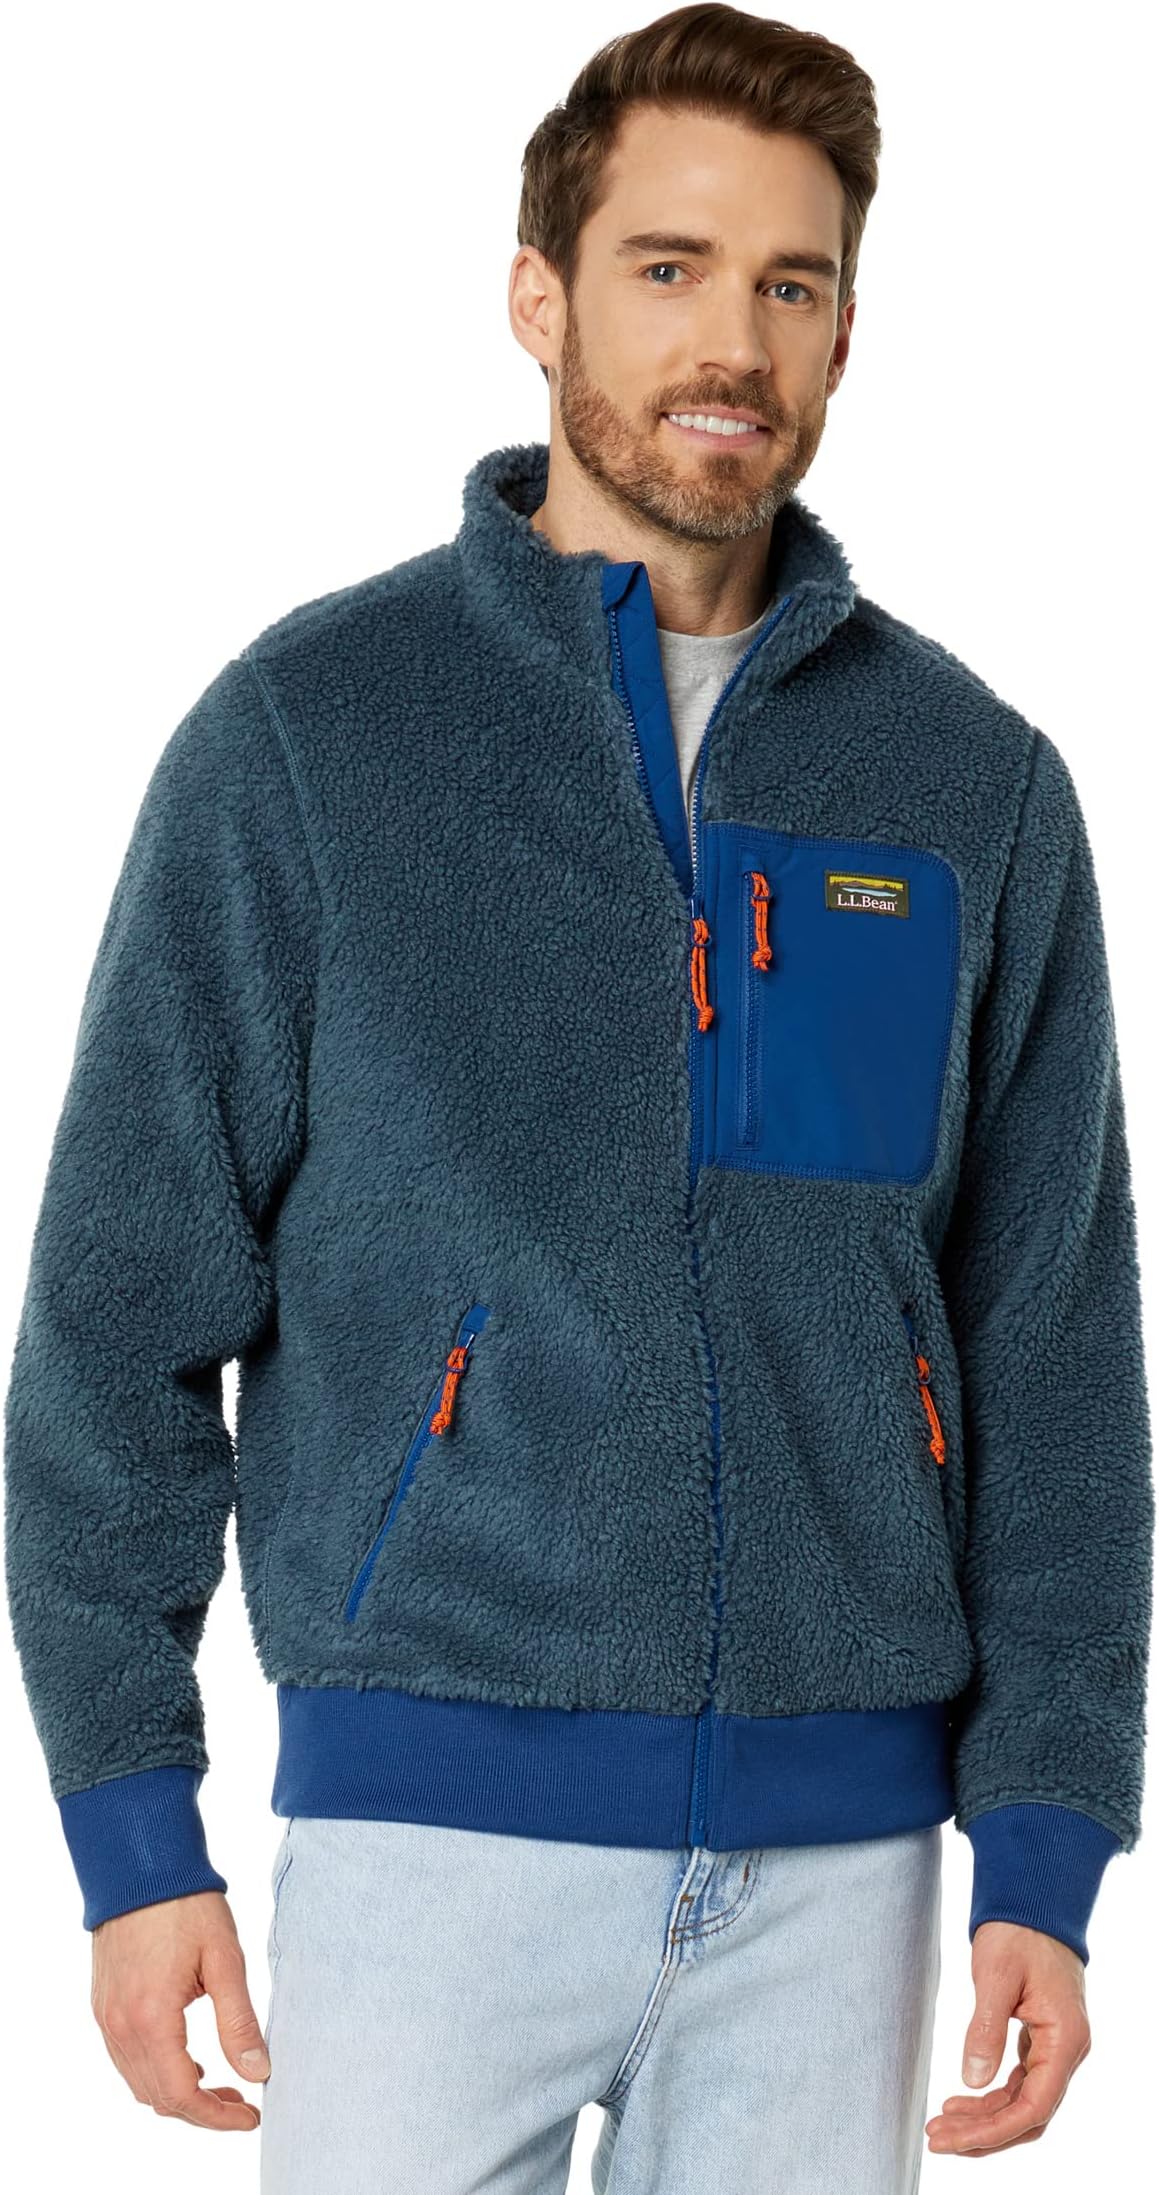 Куртка Bean's Sherpa Fleece Jacket Regular L.L.Bean, цвет Storm Blue/Collegiate Blue часы storm enya blue 47399 b